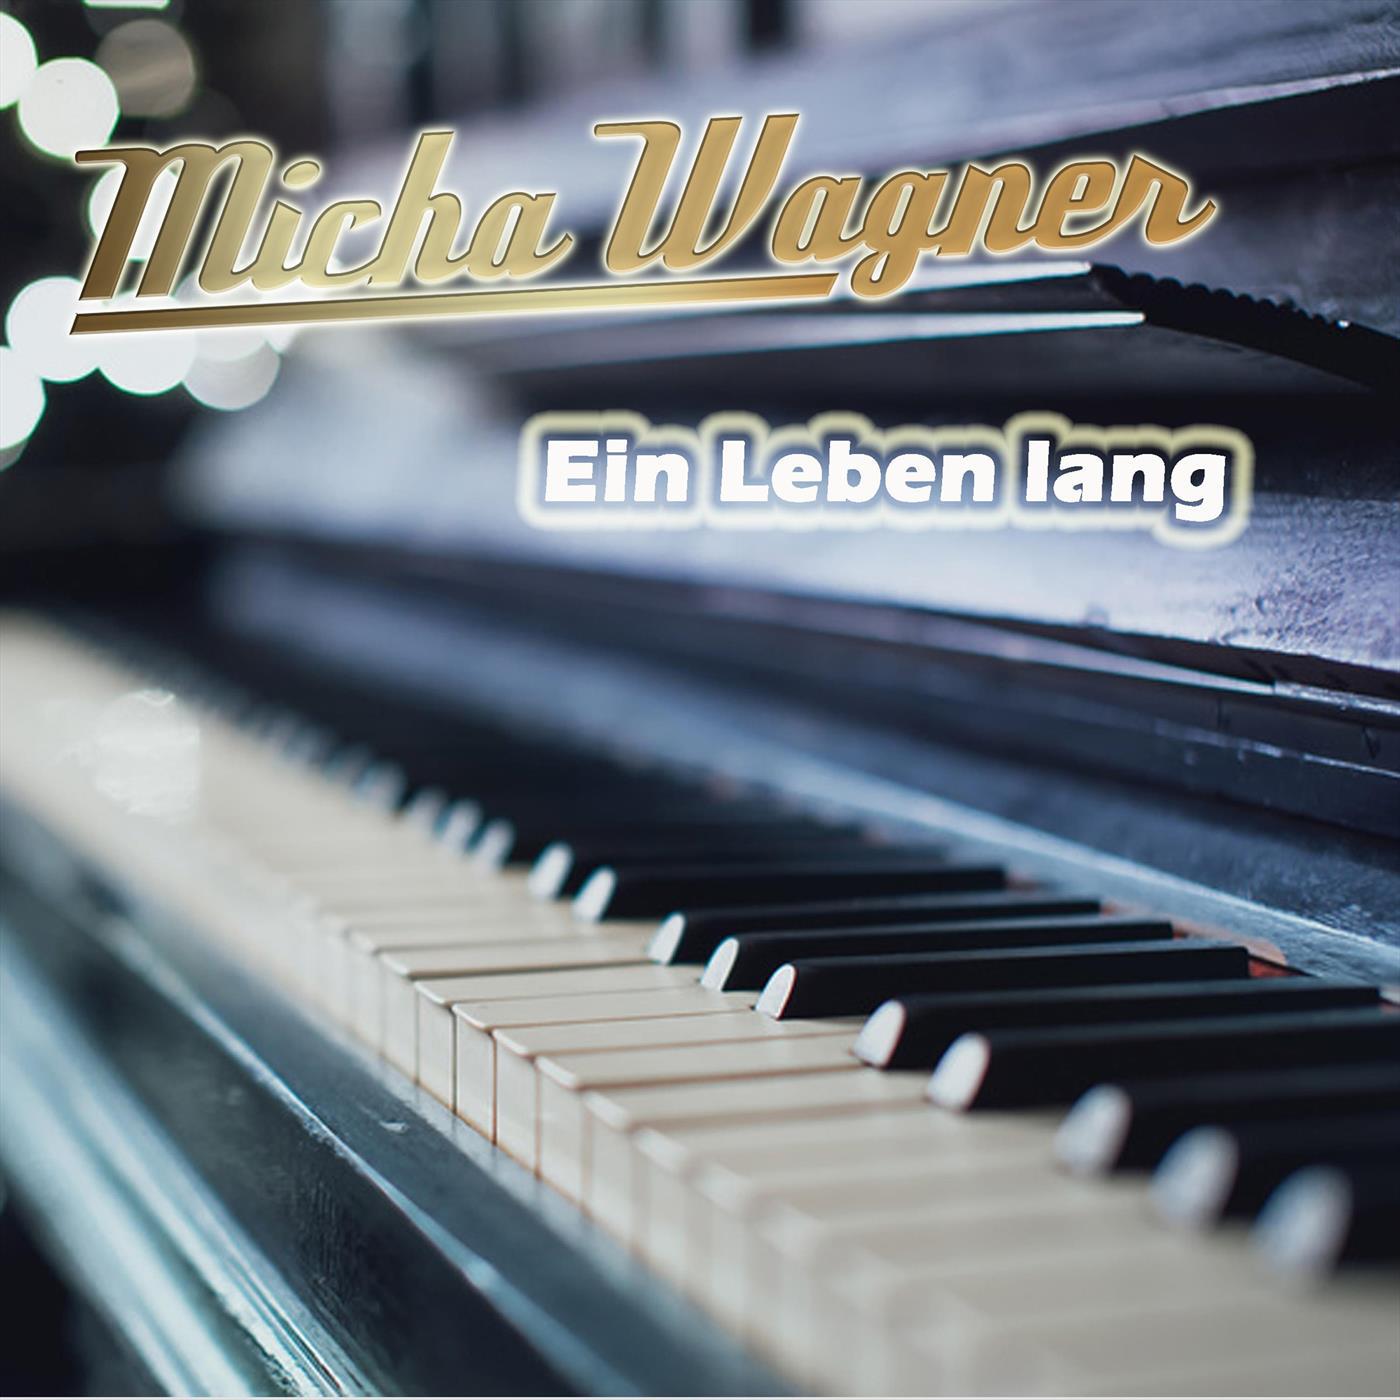 Micha Wagner - Ein Leben lang